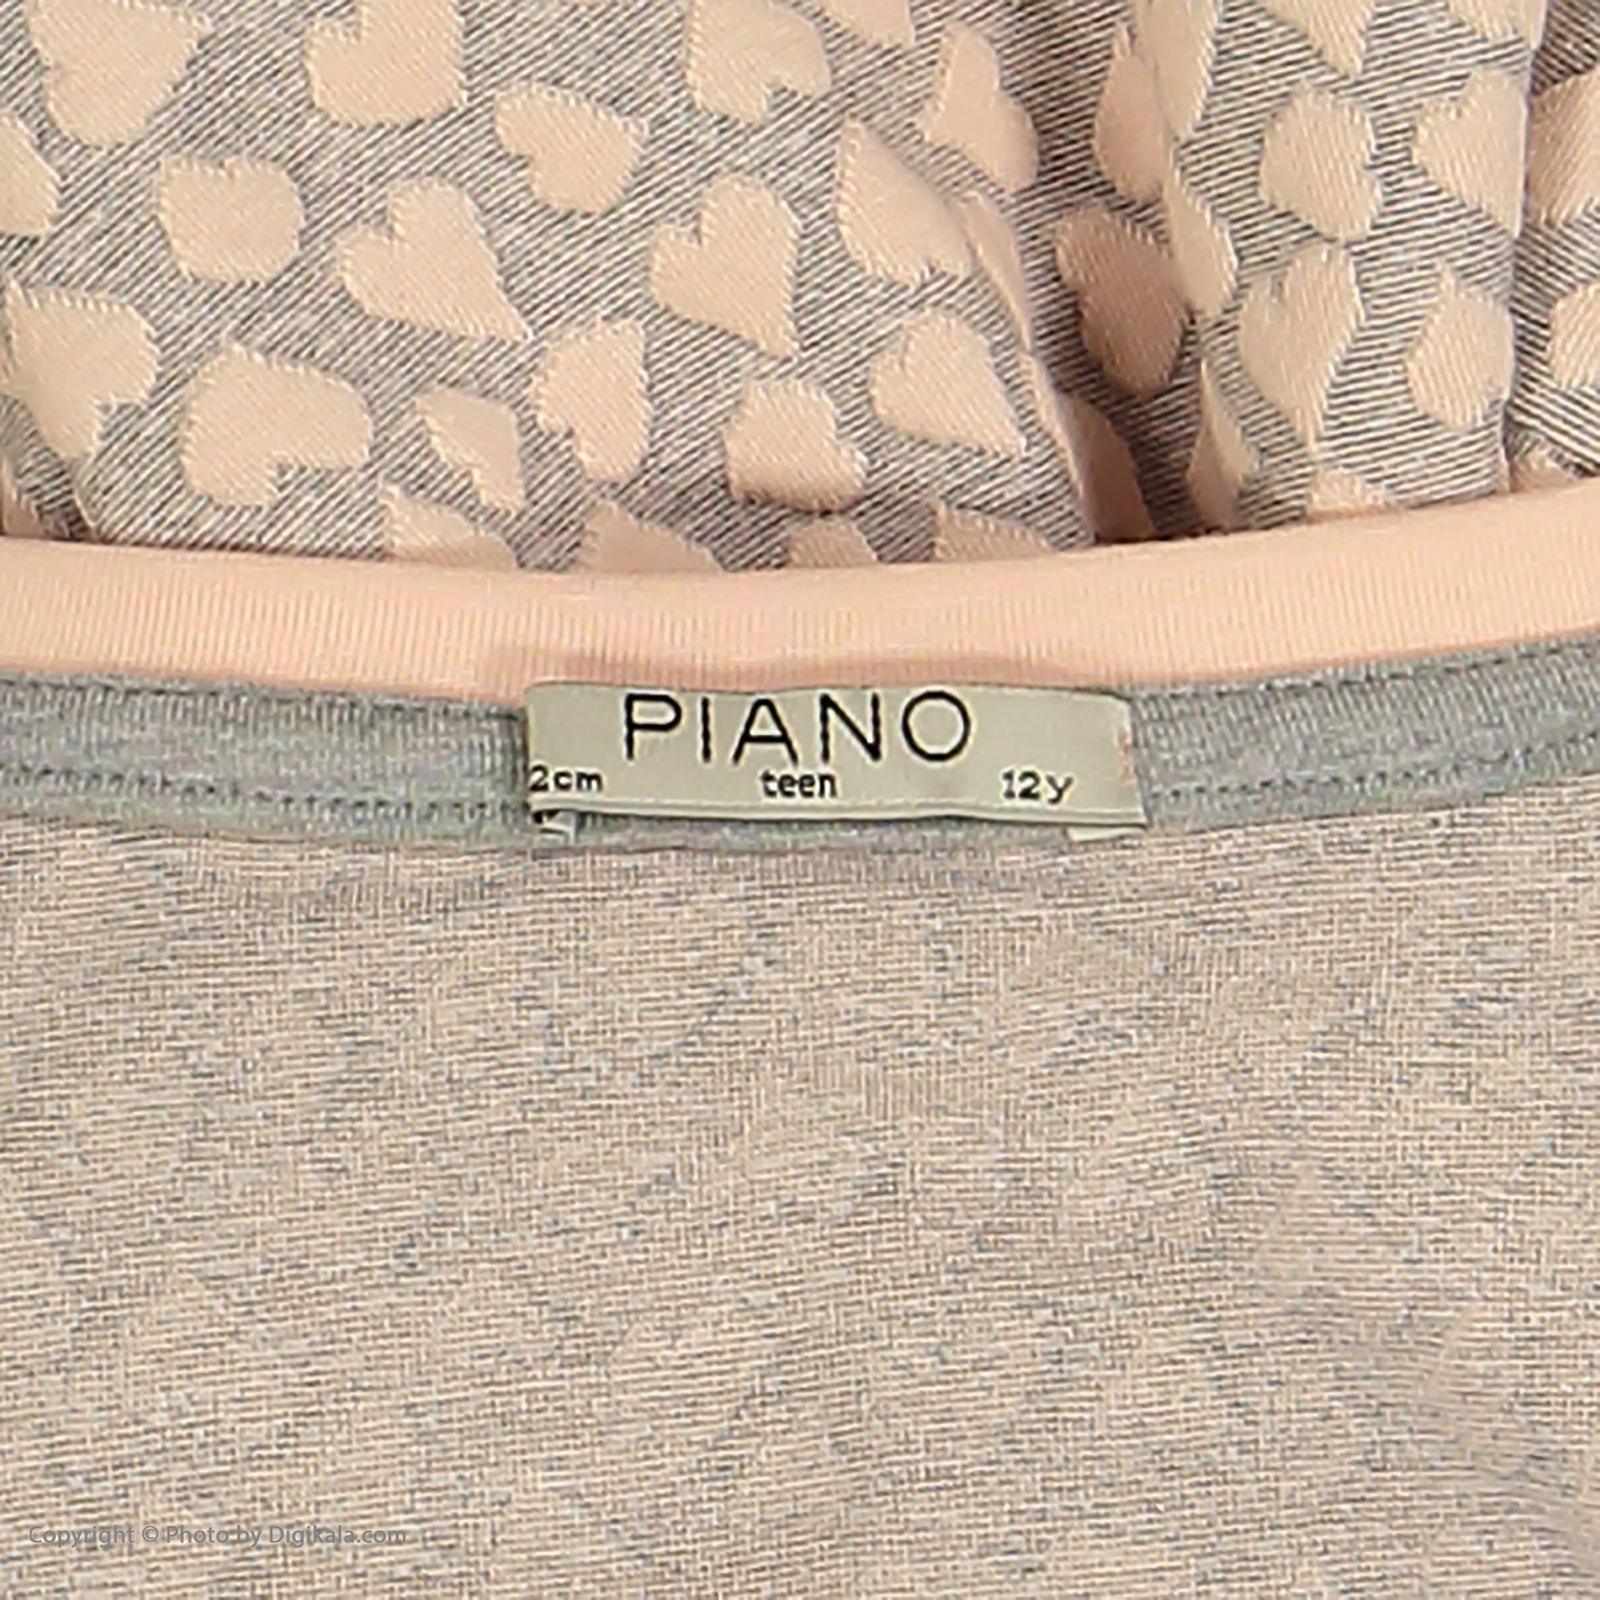 تی شرت دخترانه پیانو مدل 01816-21 -  - 5